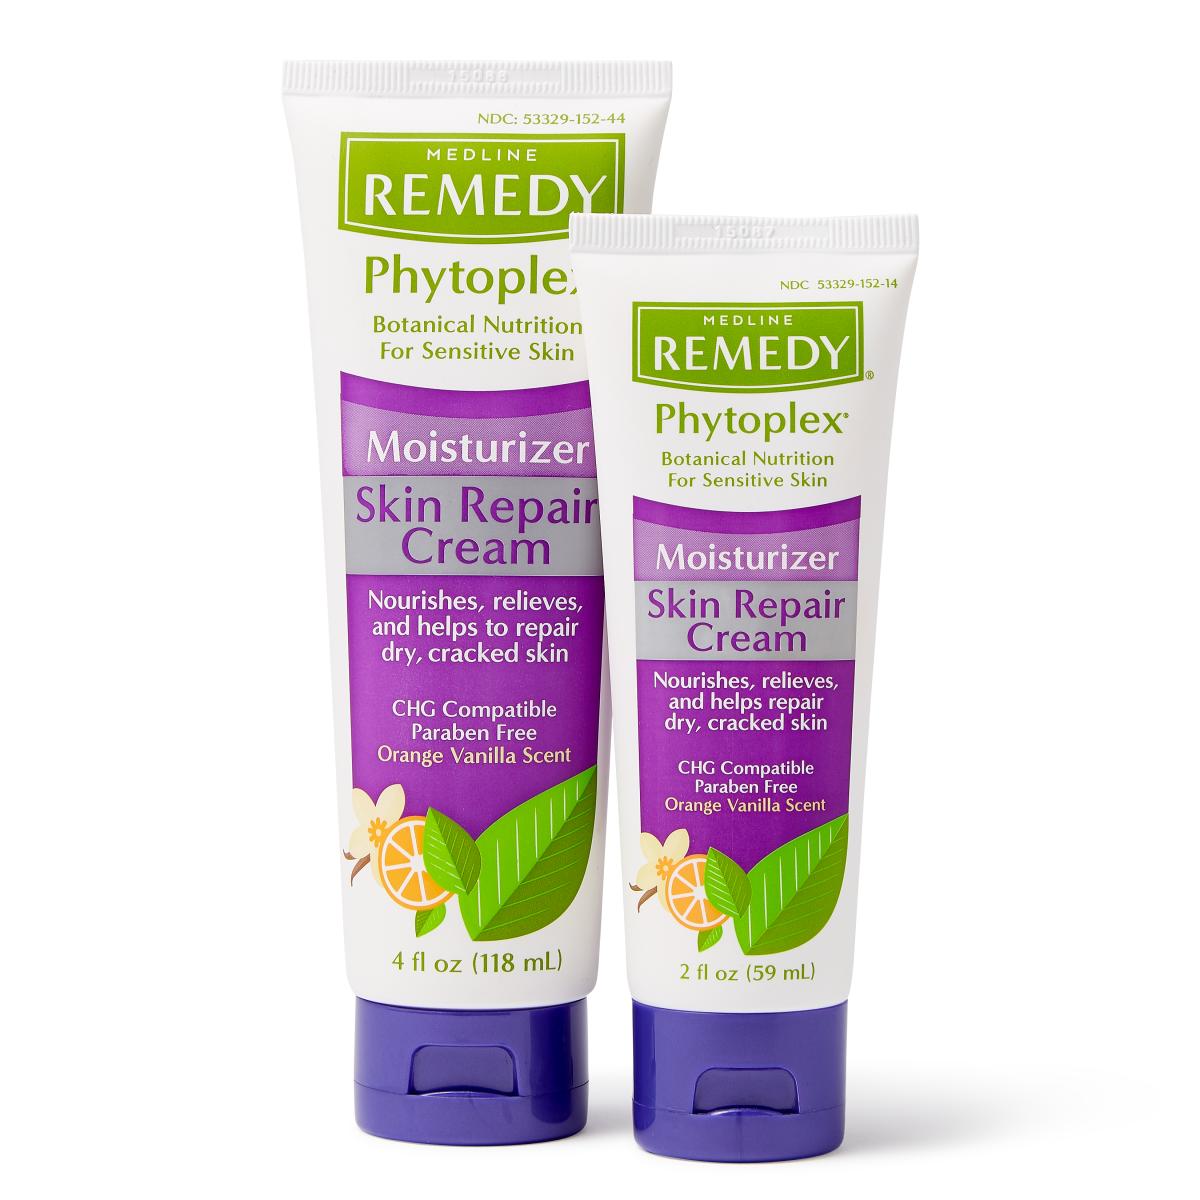 Medline Remedy Phytoplex Moisturizer Skin Repair Cream 2oz Medline Remedy Phytoplex Moisturizer Skin Repair Cream 2oz Skin Creams Medline - Americare Medical Supply